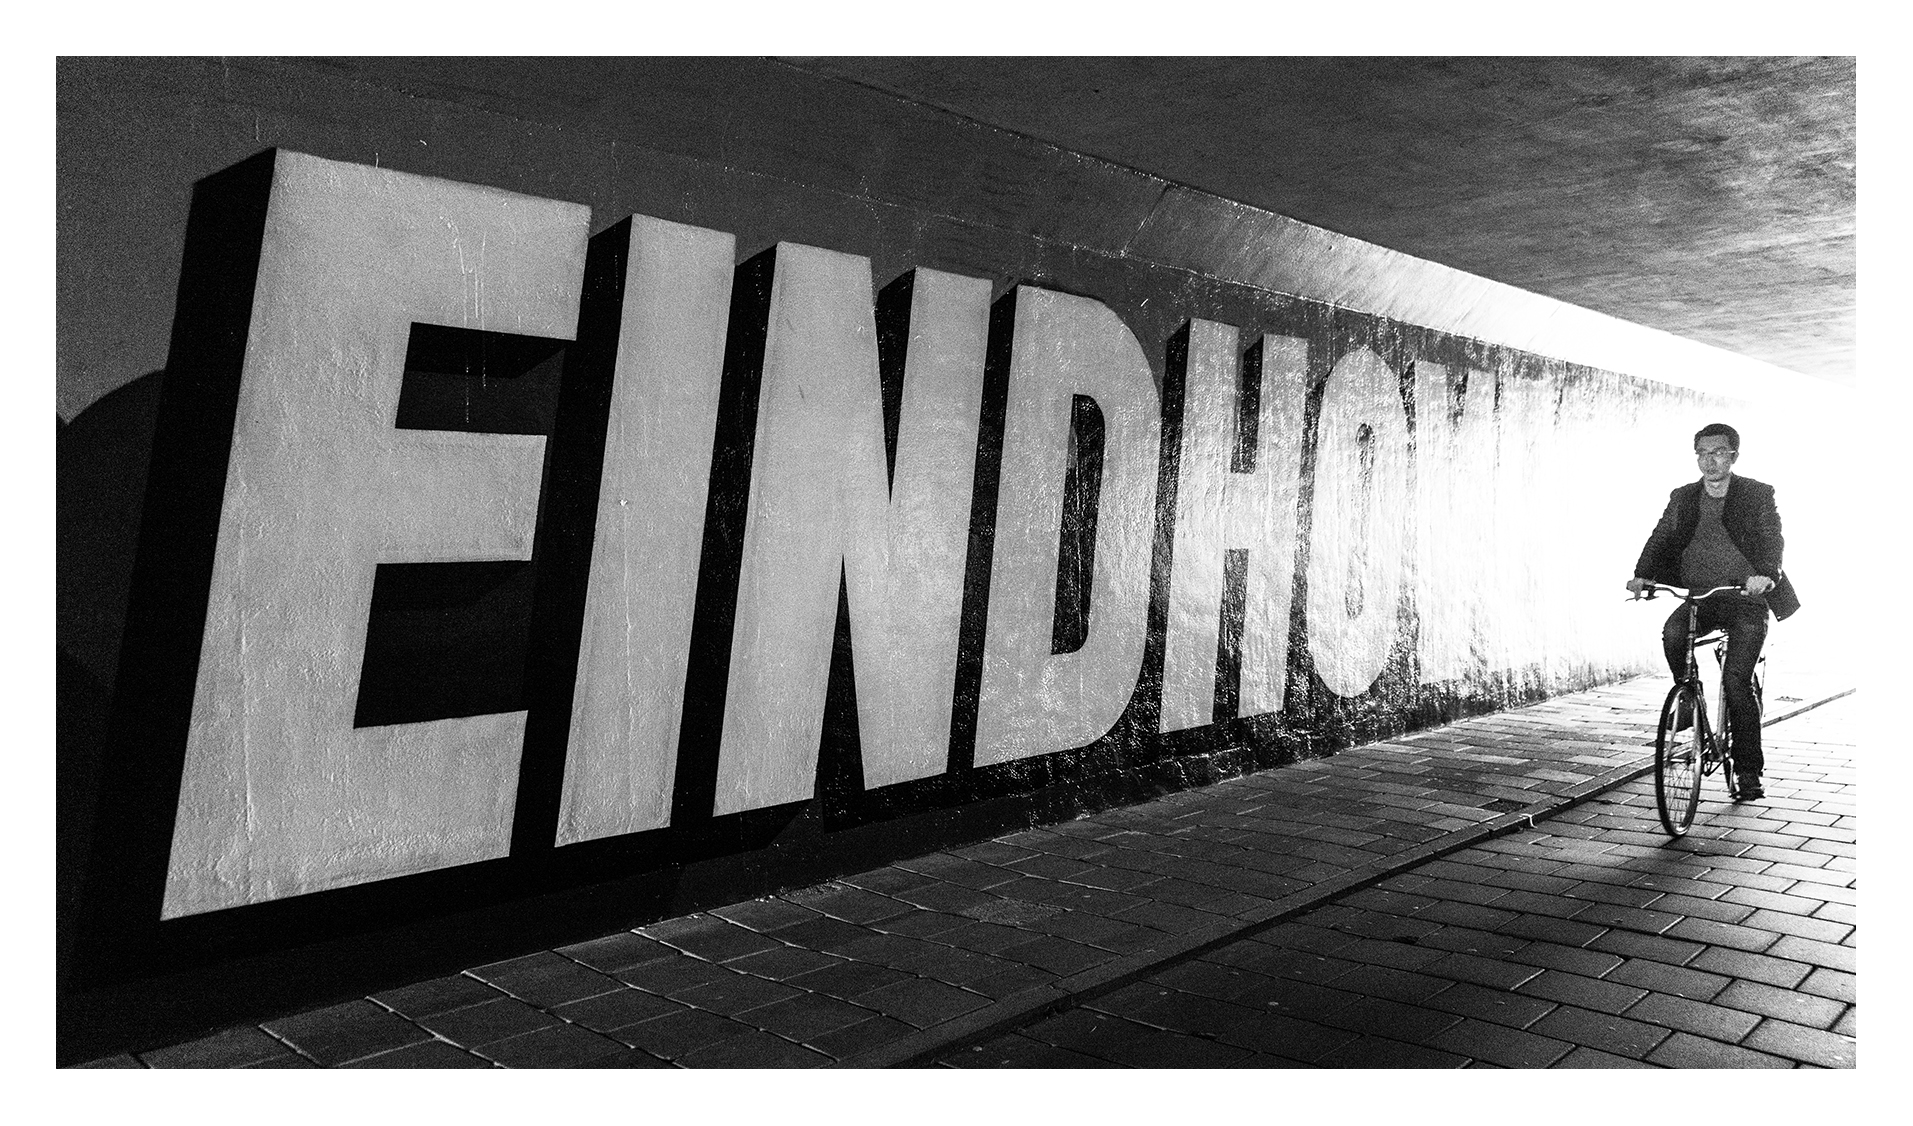 Eindhoven&mdash;EINDHOVEN